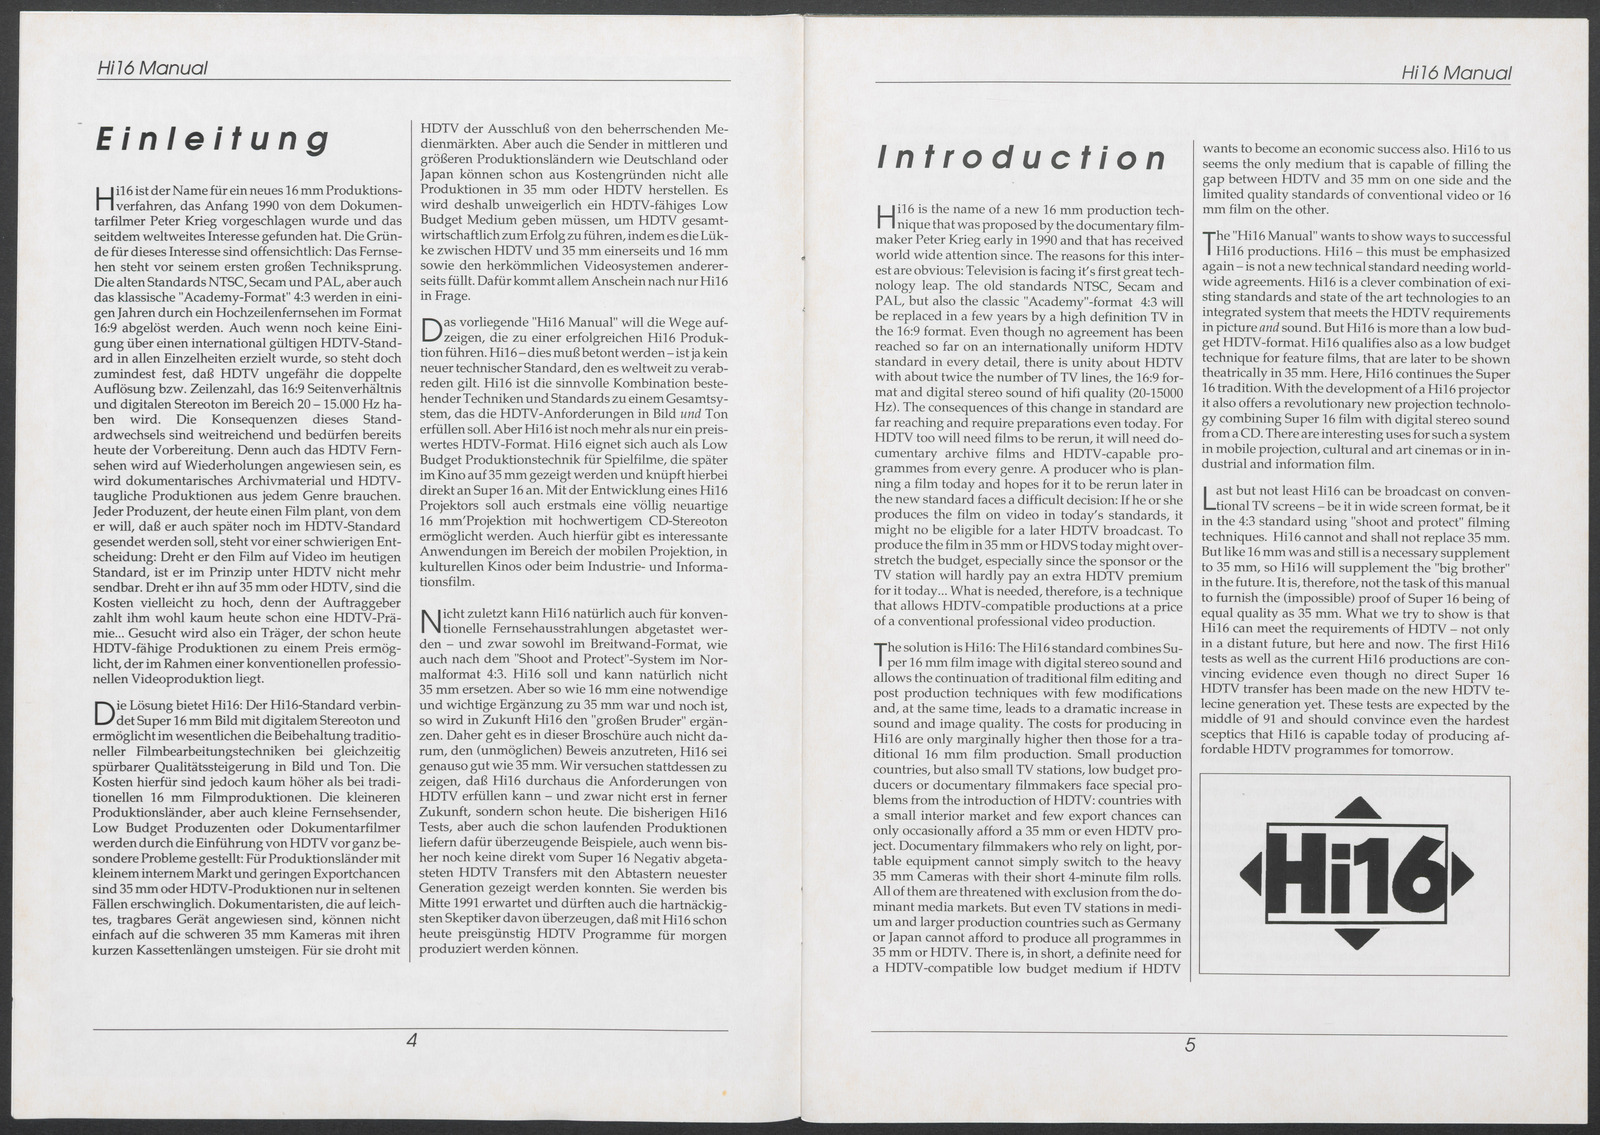 Hi16 Manual (1990), Seiten 4 und 5